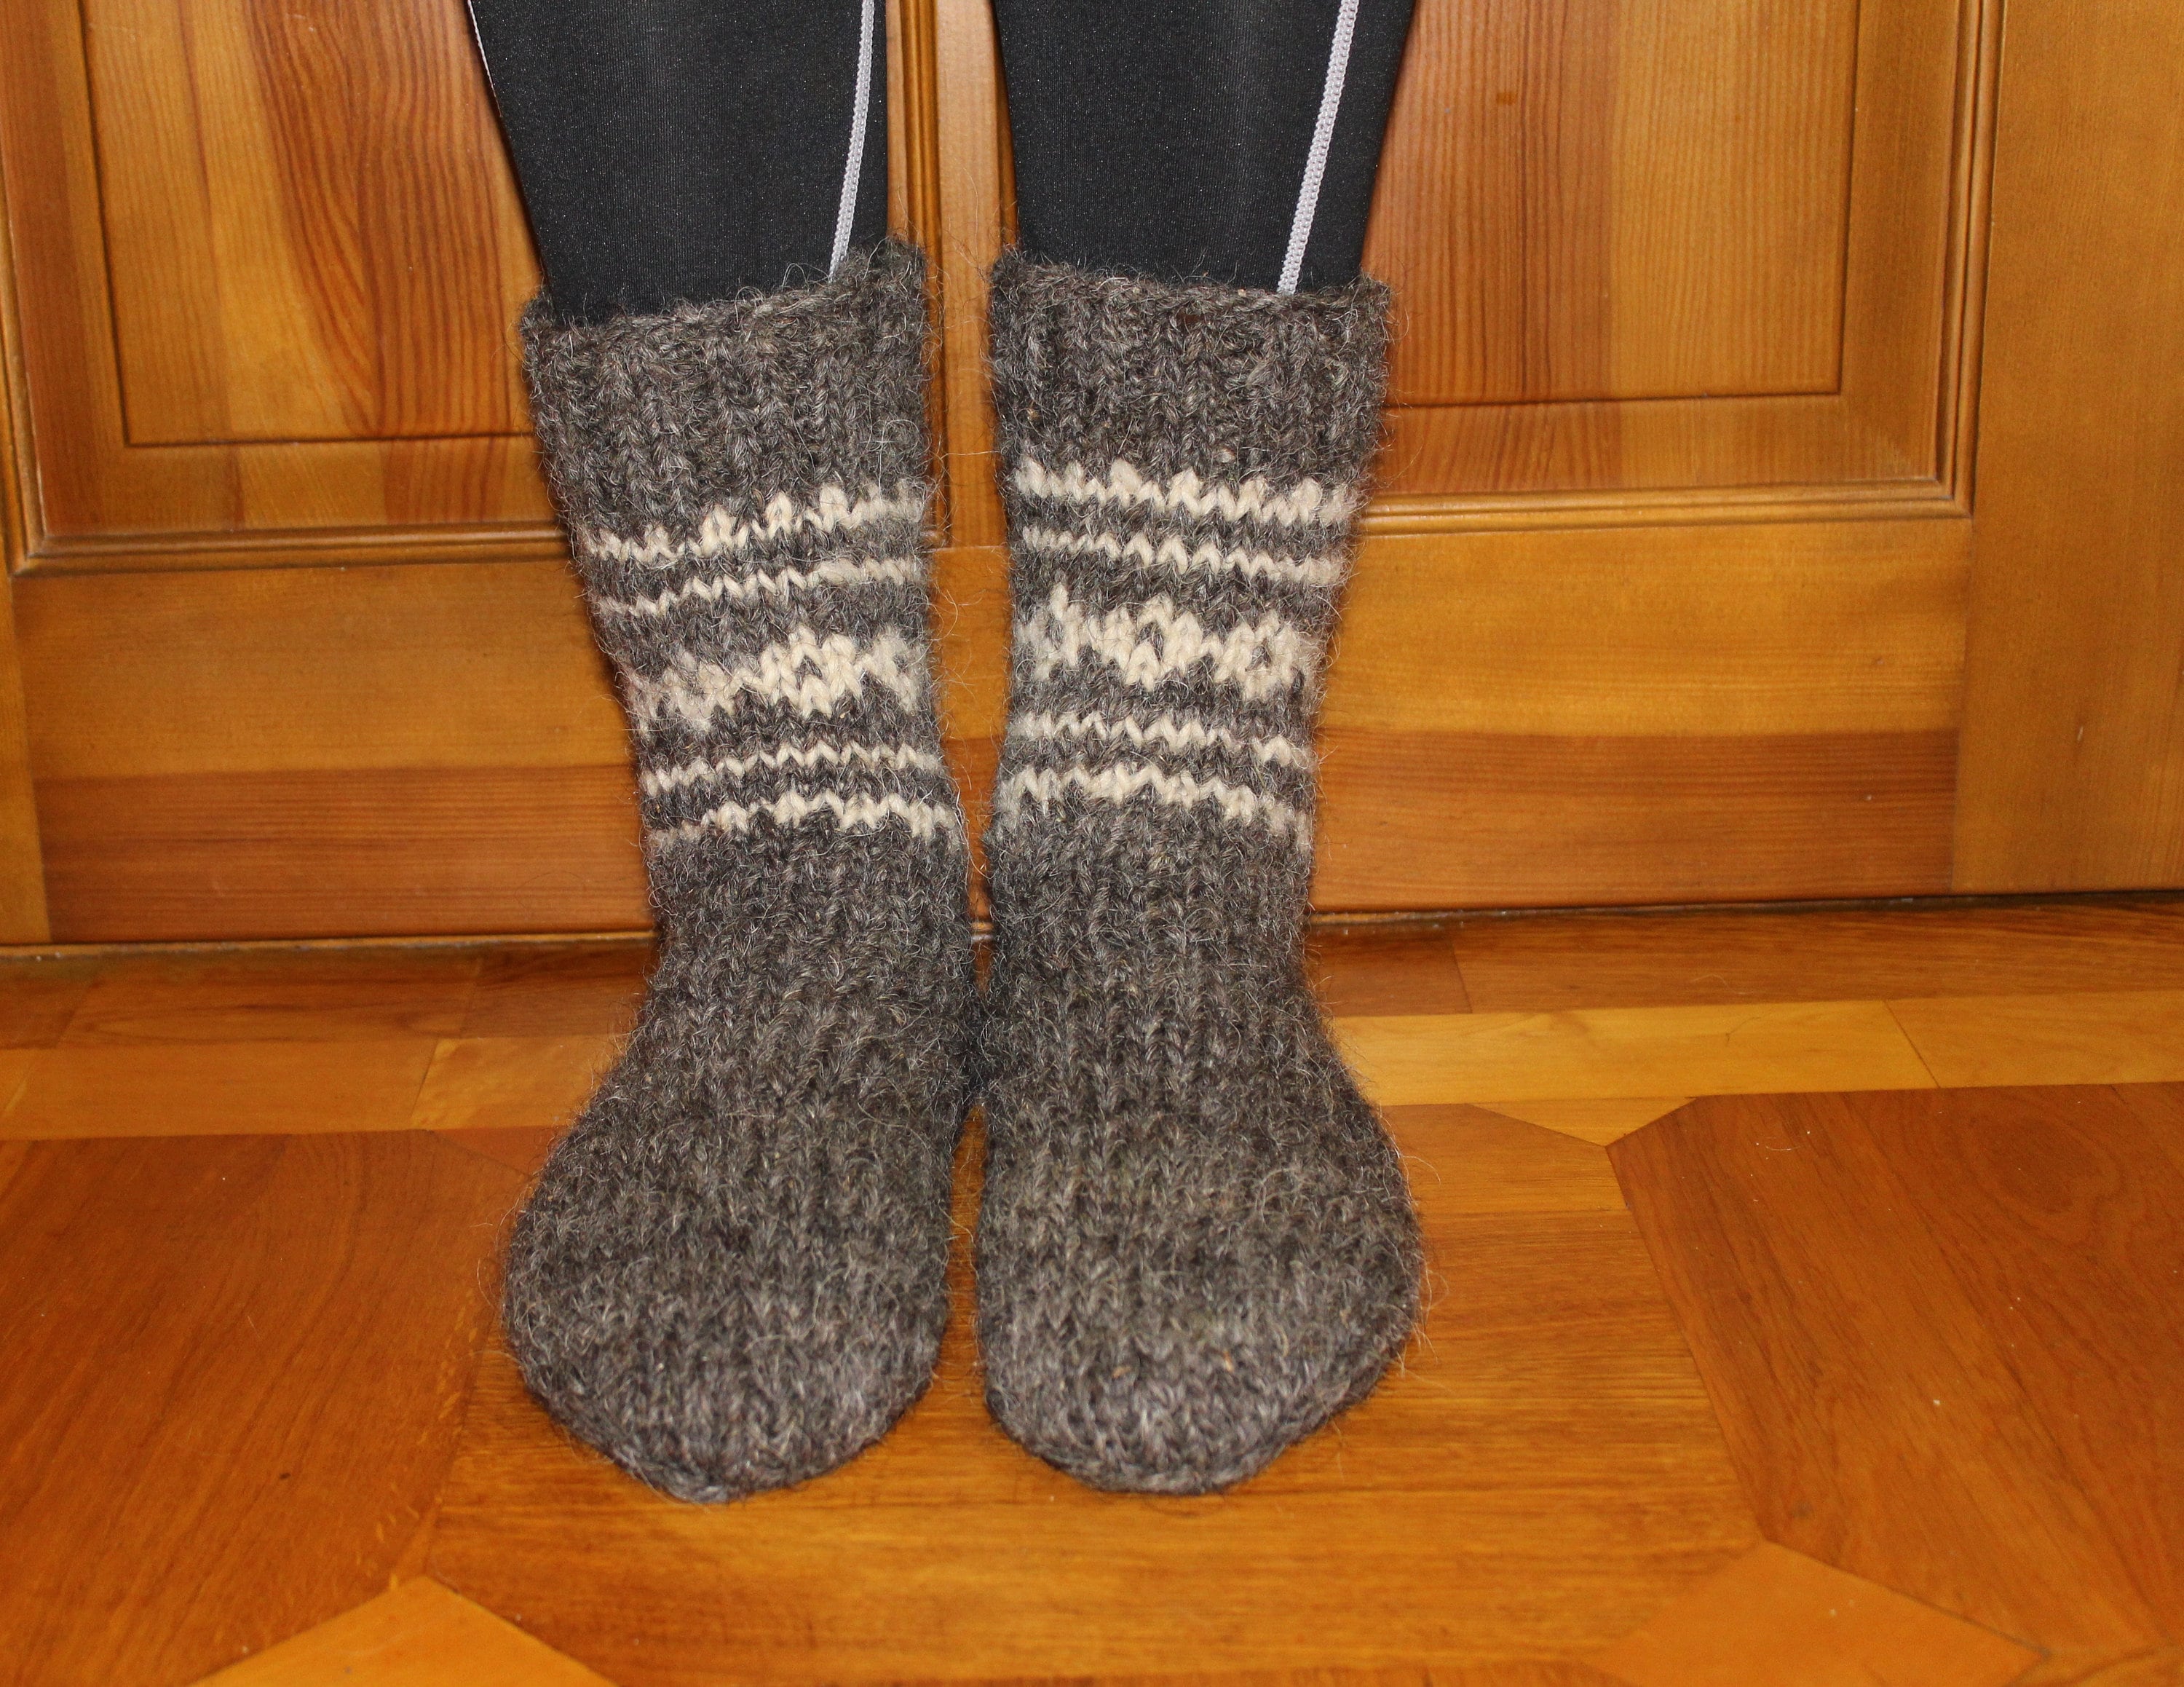 Sheep's Wool Socks 100% Natural Warm Handmade Casual | Etsy